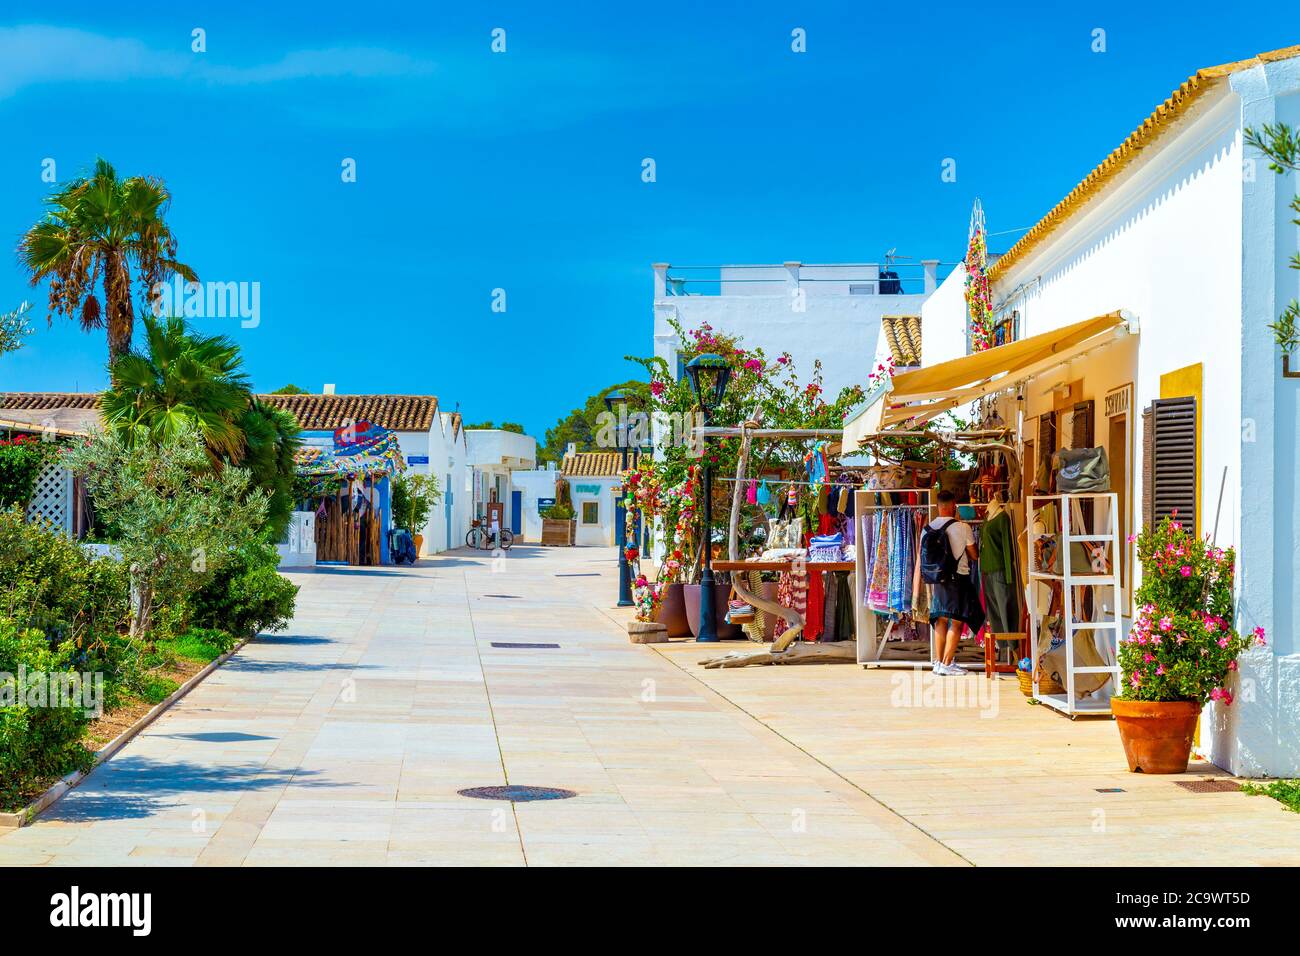 Une rue avec des boutiques hippie bohemiennes à Sant Francesc Xavier, Formentera, Espagne Banque D'Images